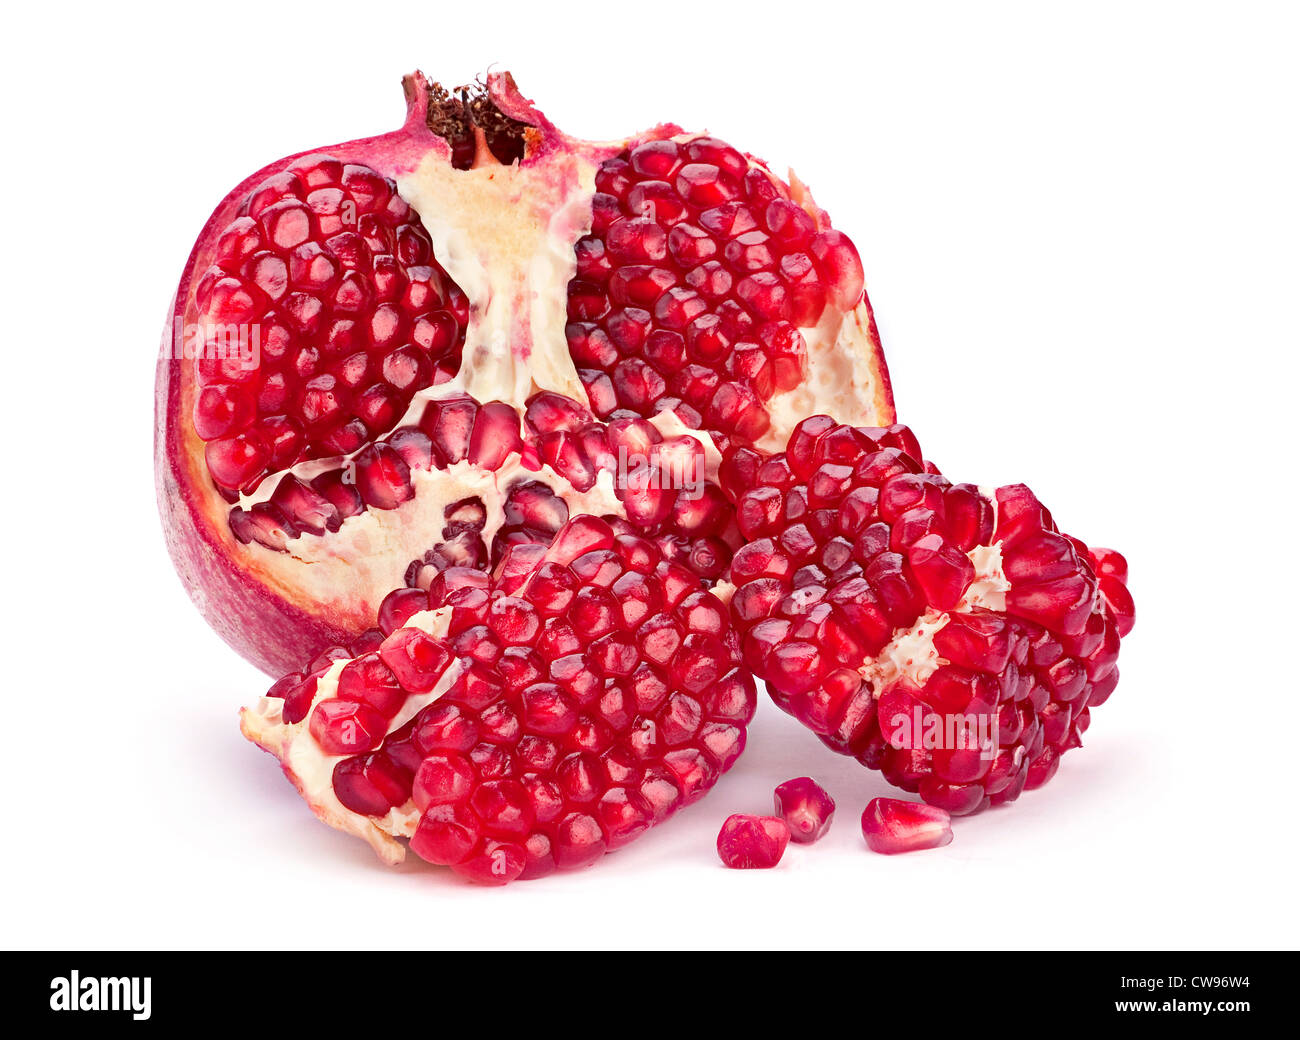 Pomegranate fruit closeup on white background Stock Photo